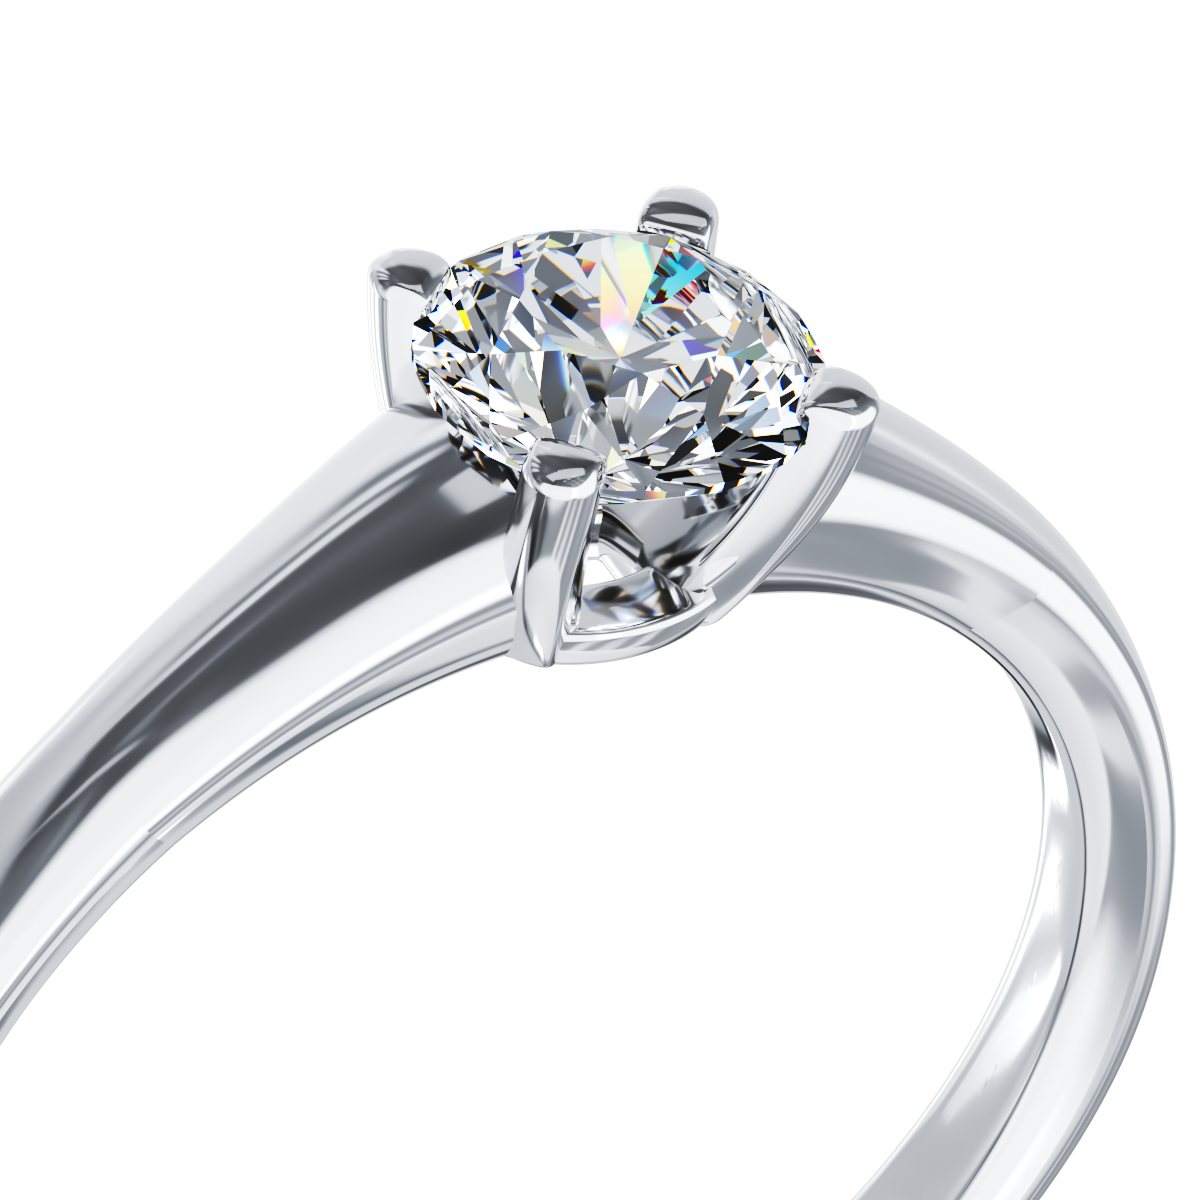 Poze Inel de logodna din aur alb de 18K cu un diamant solitaire de 0.5ct